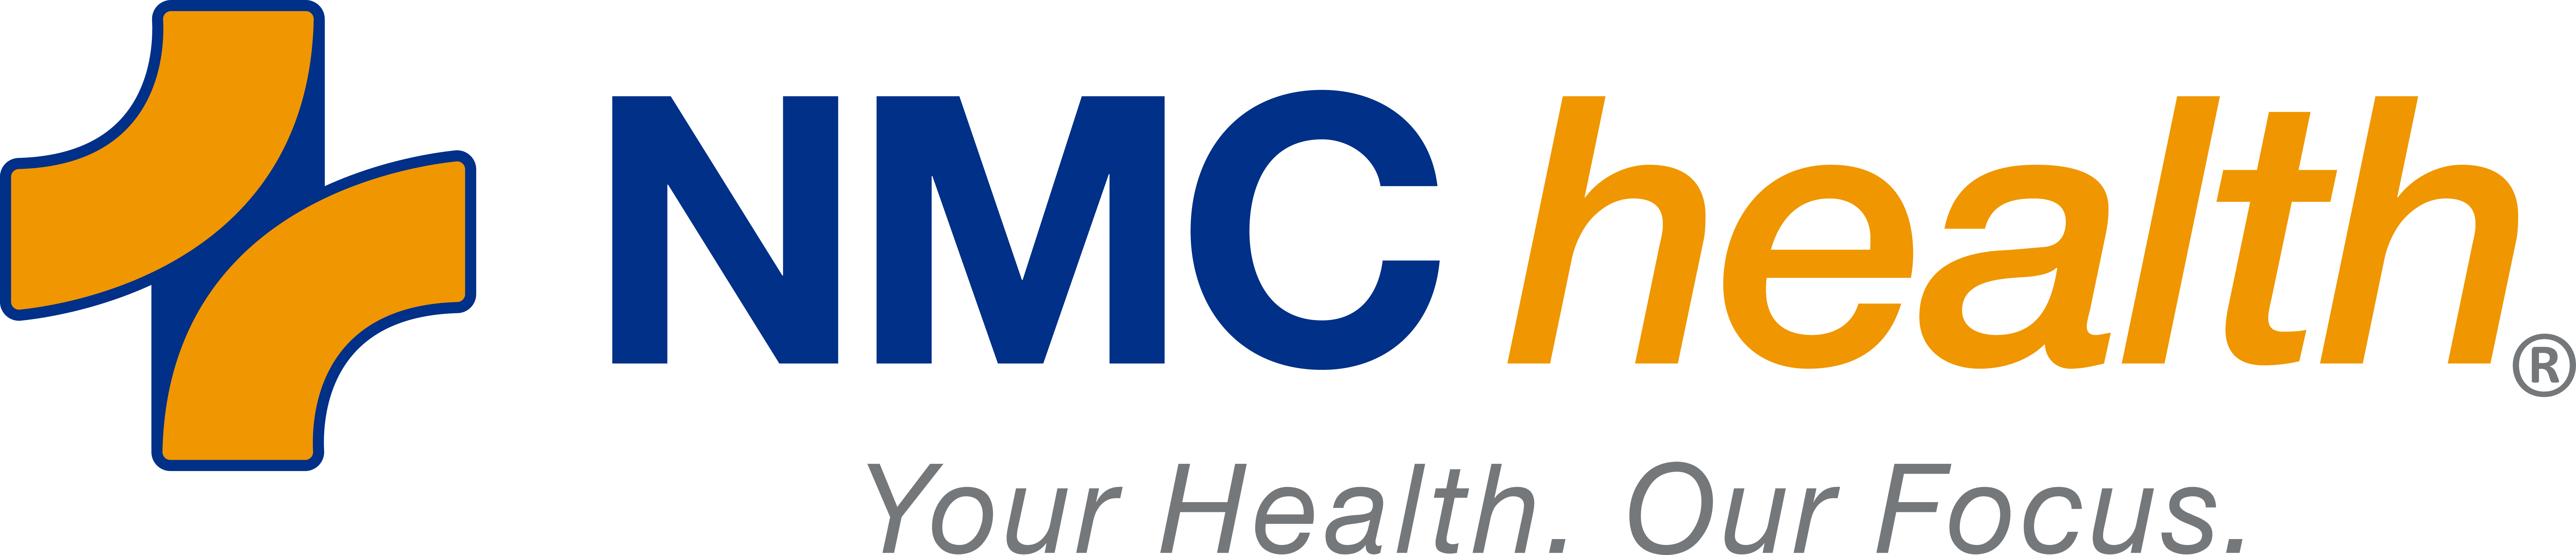 NMC Health